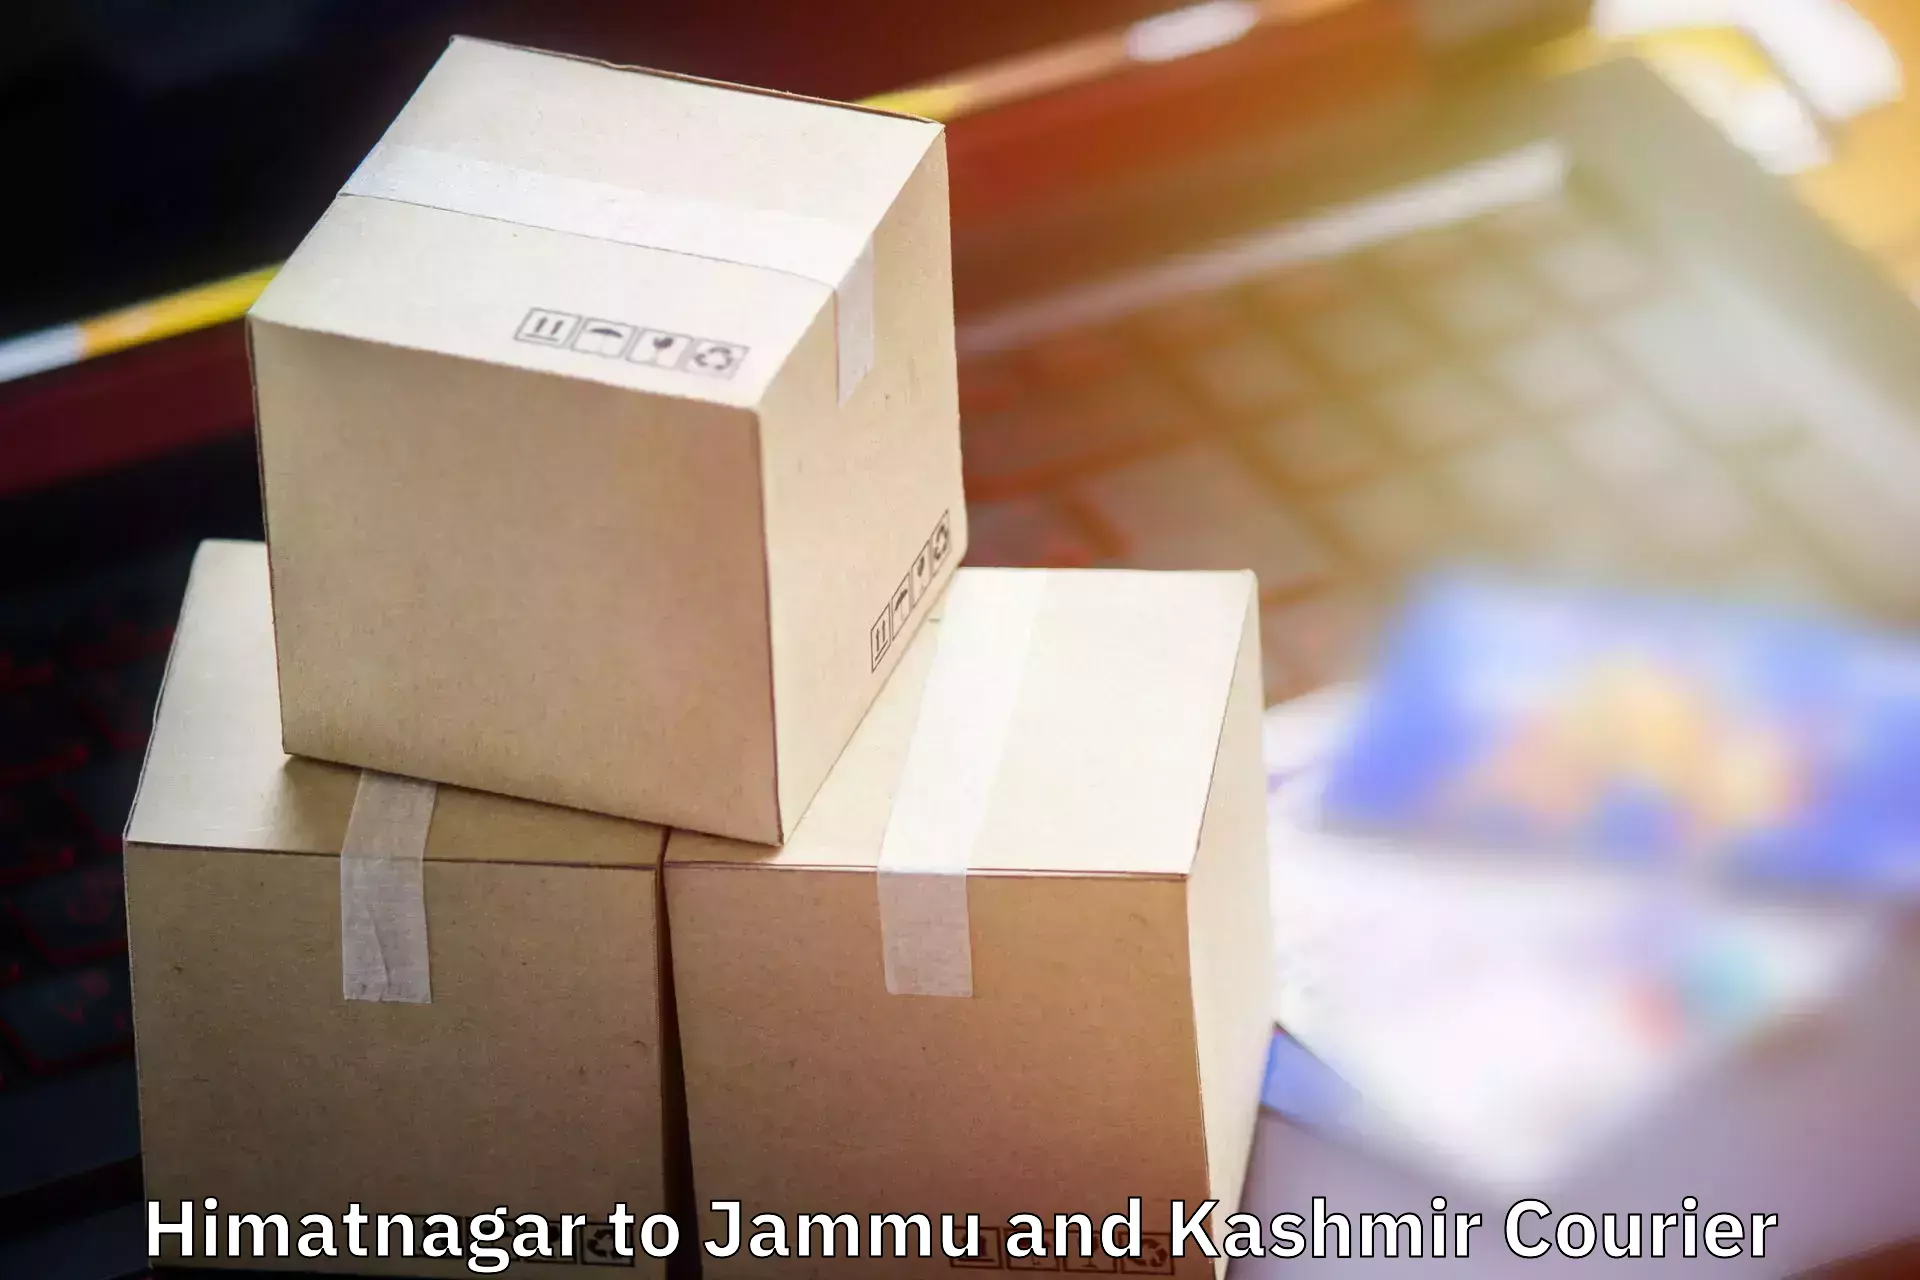 Baggage shipping experts Himatnagar to Anantnag